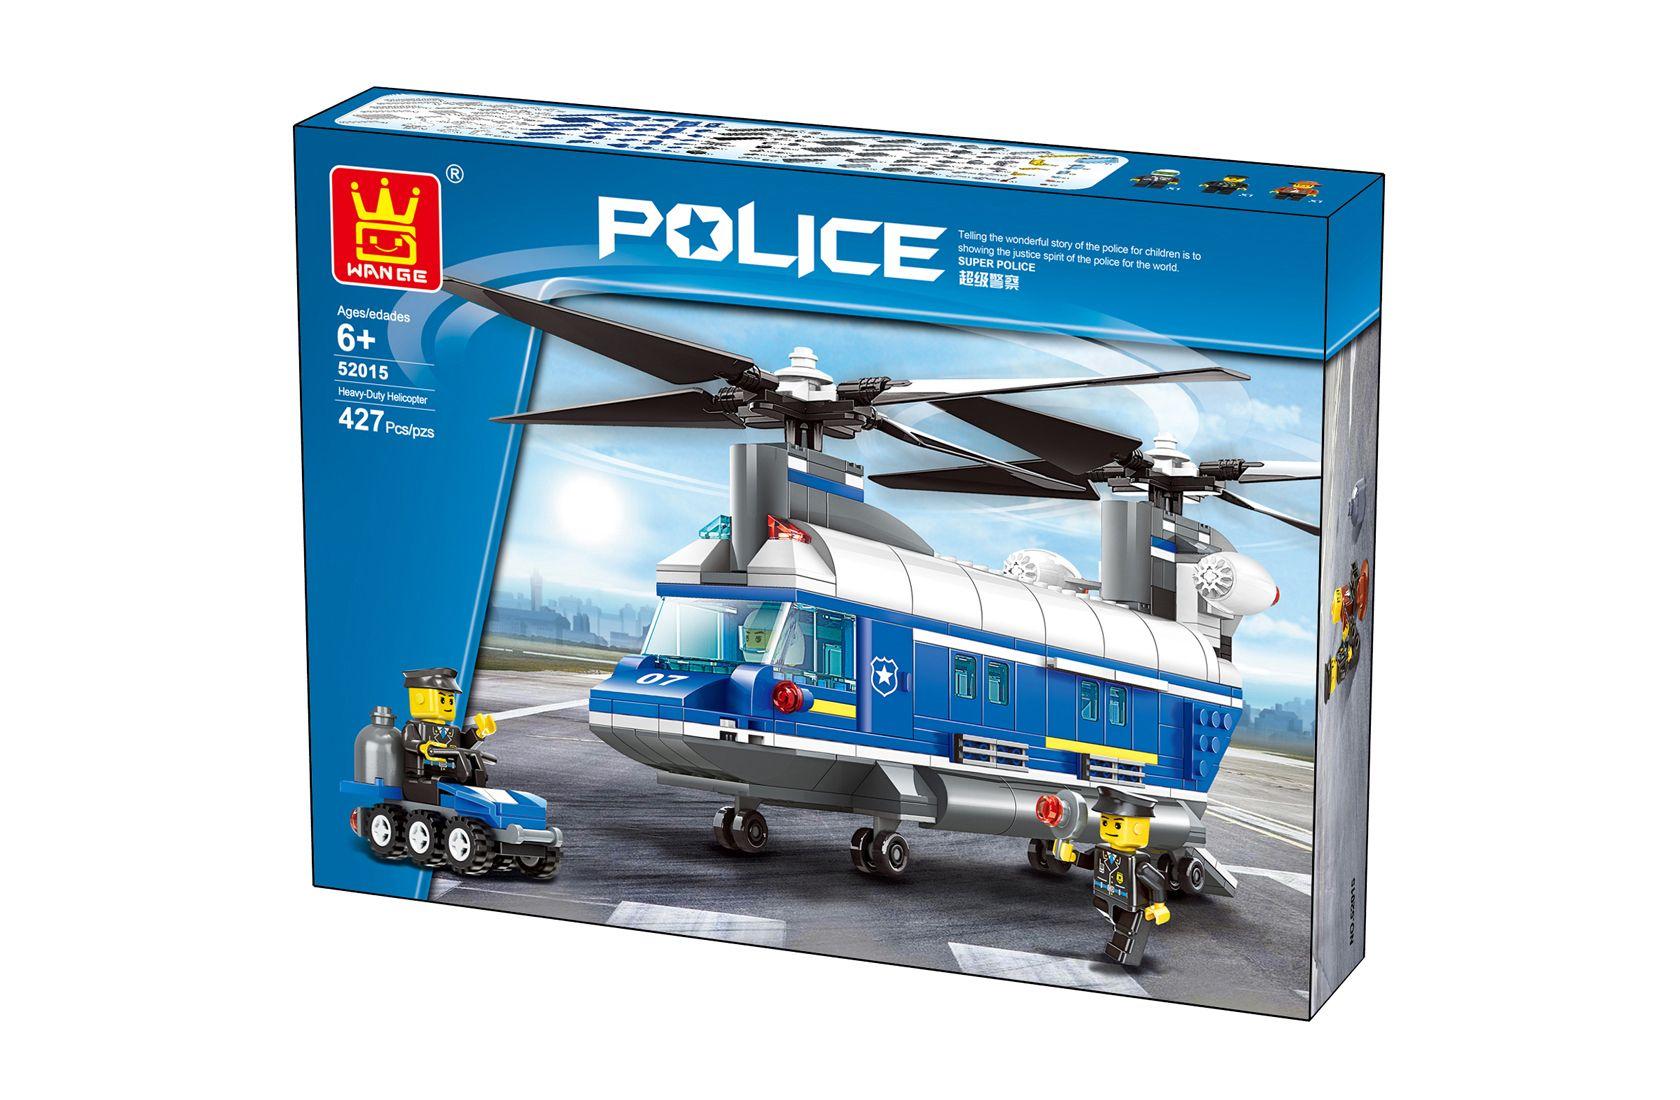 Zestaw klocków - Helikopter policyjny transportowy